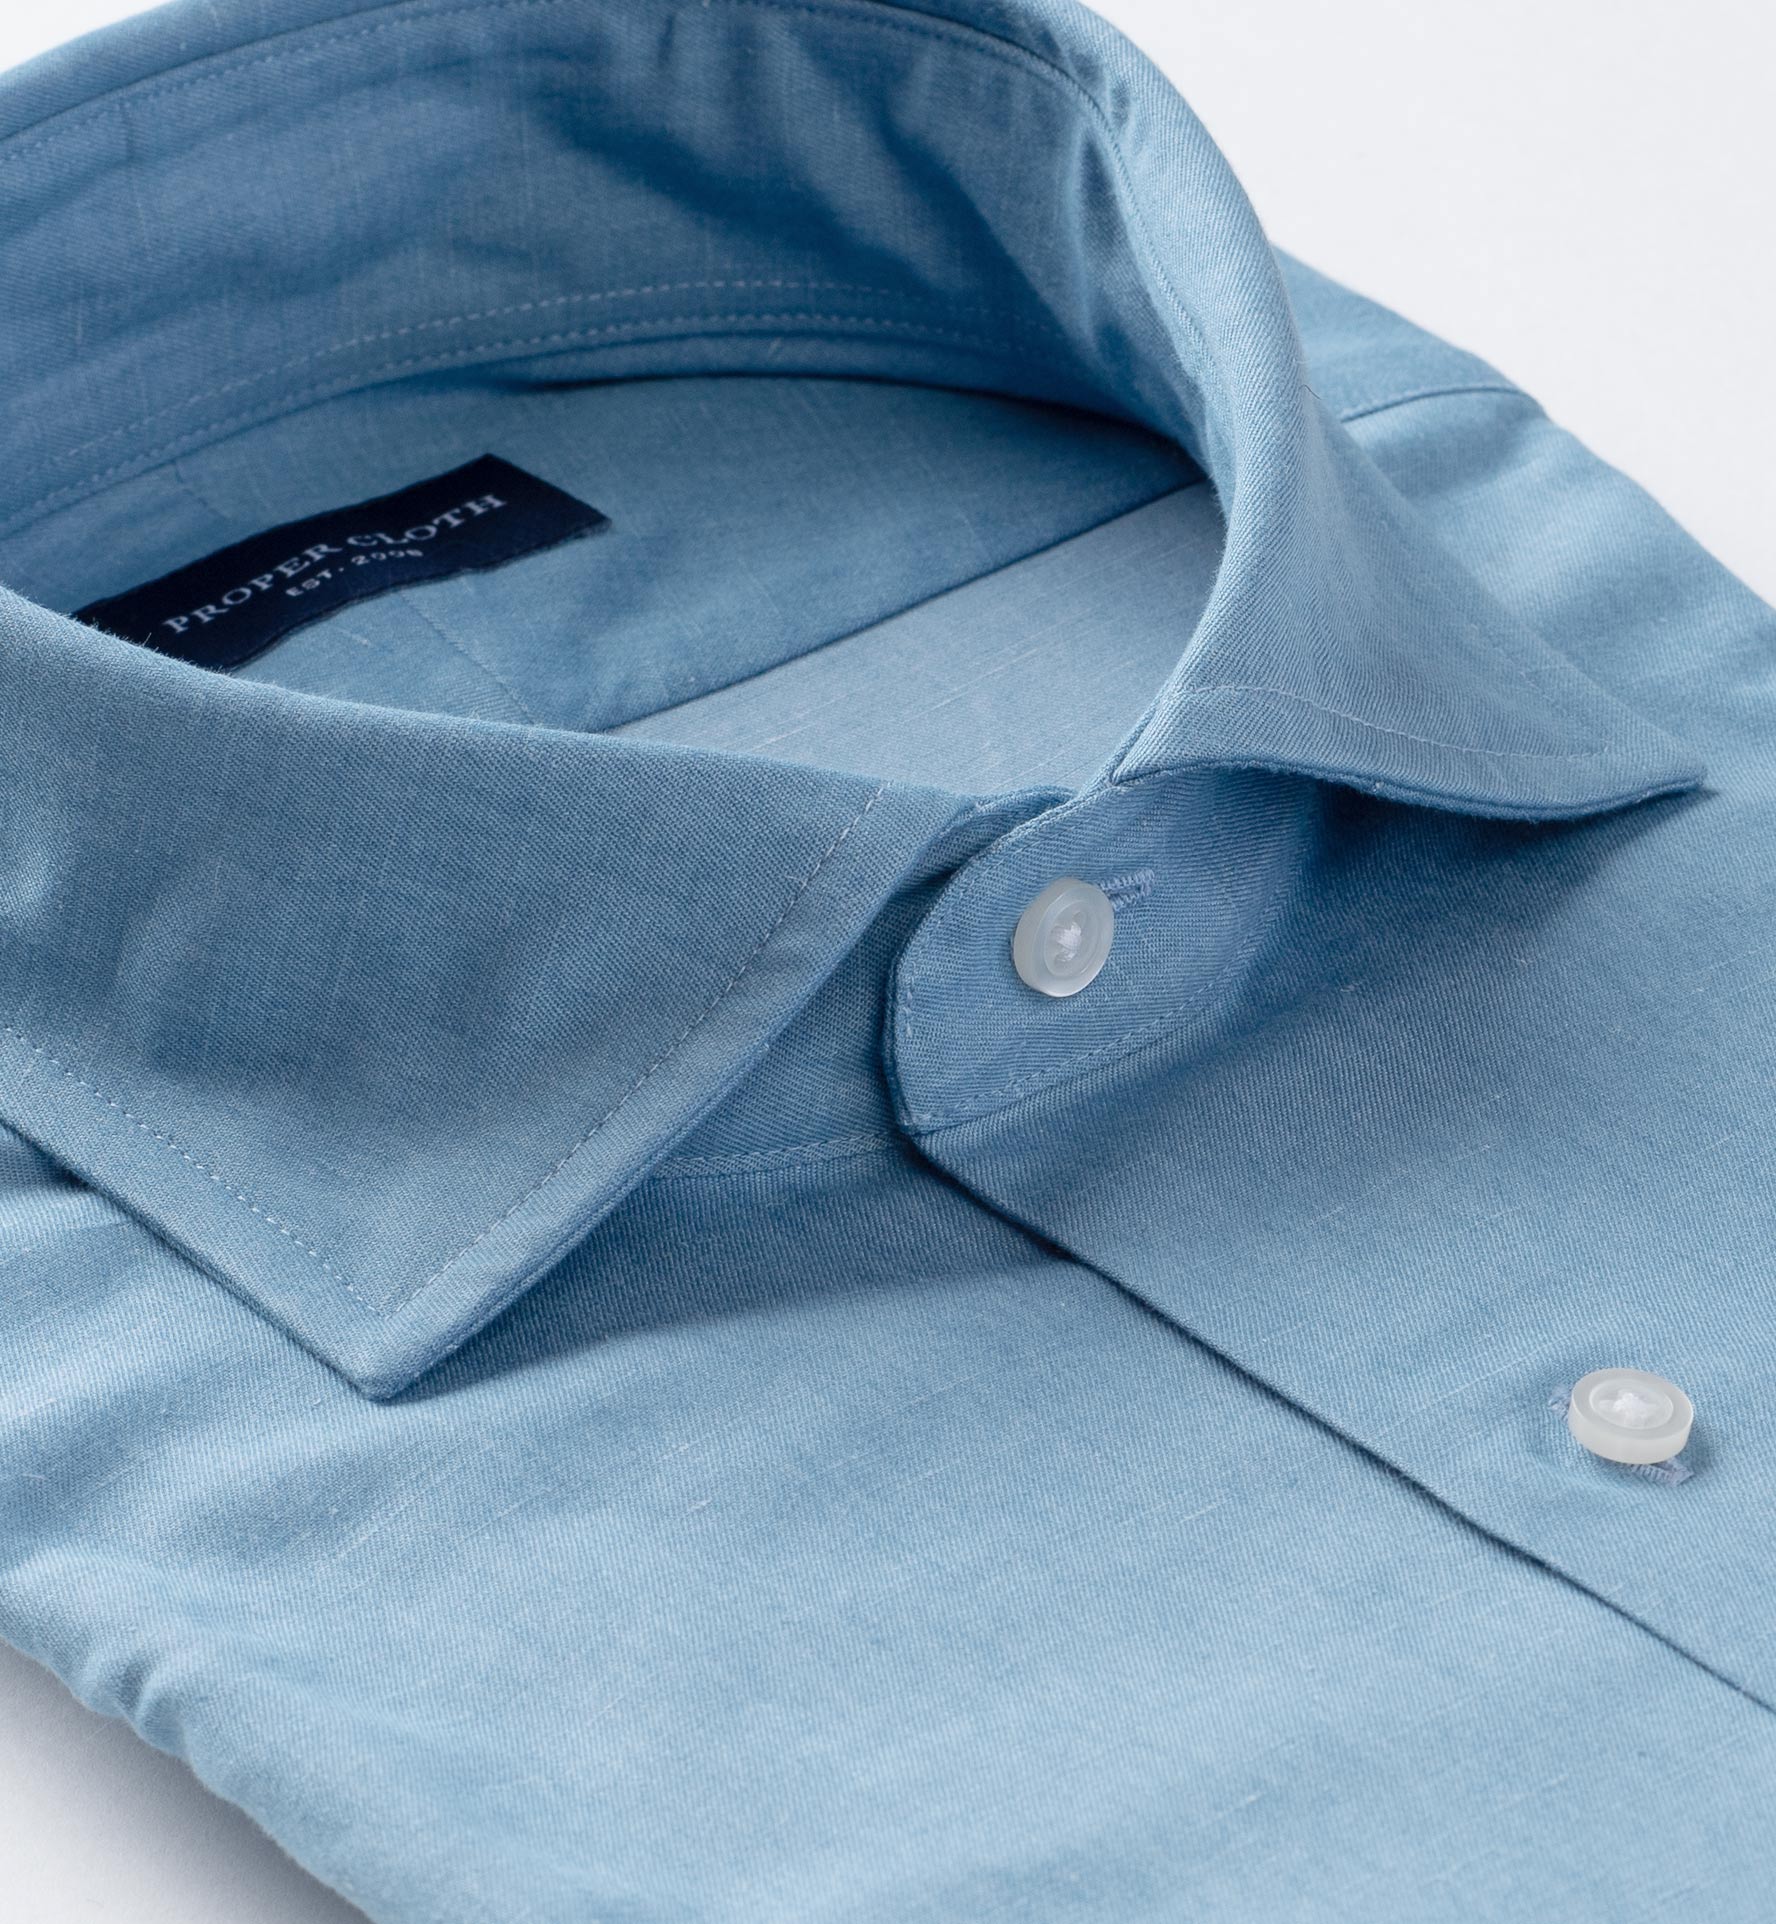 Monti Light Blue Cotton Linen Denim Fitted Dress Shirt by Proper Cloth